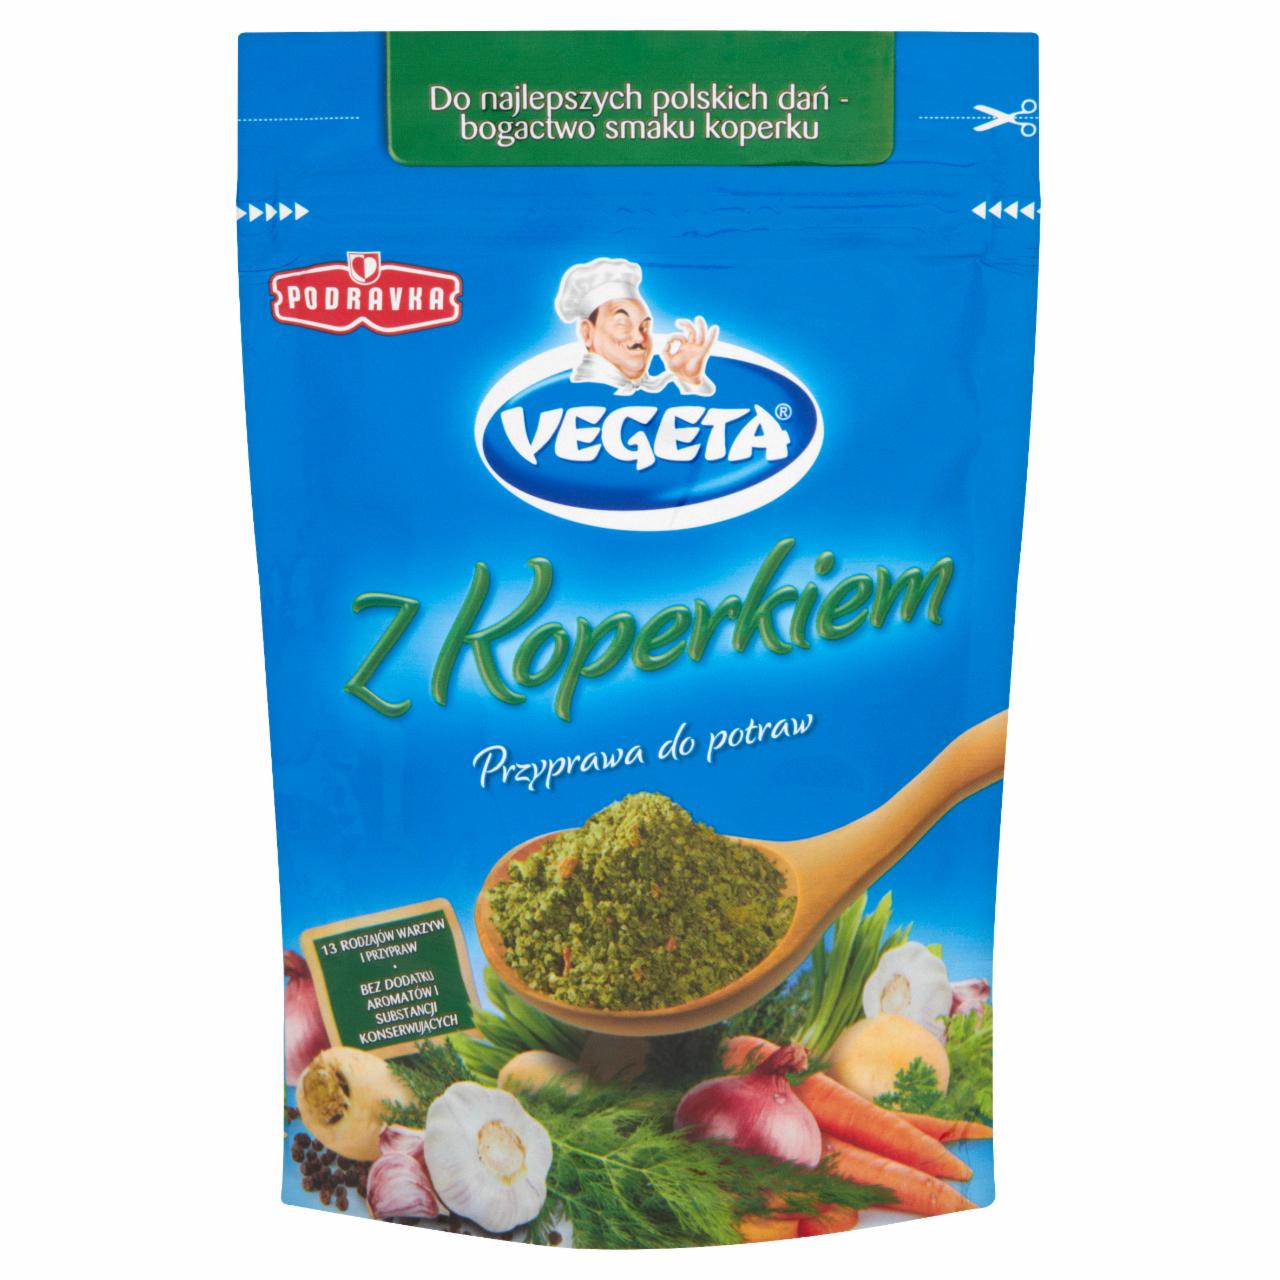 Zdjęcia - Vegeta z Koperkiem Przyprawa do potraw 100 g